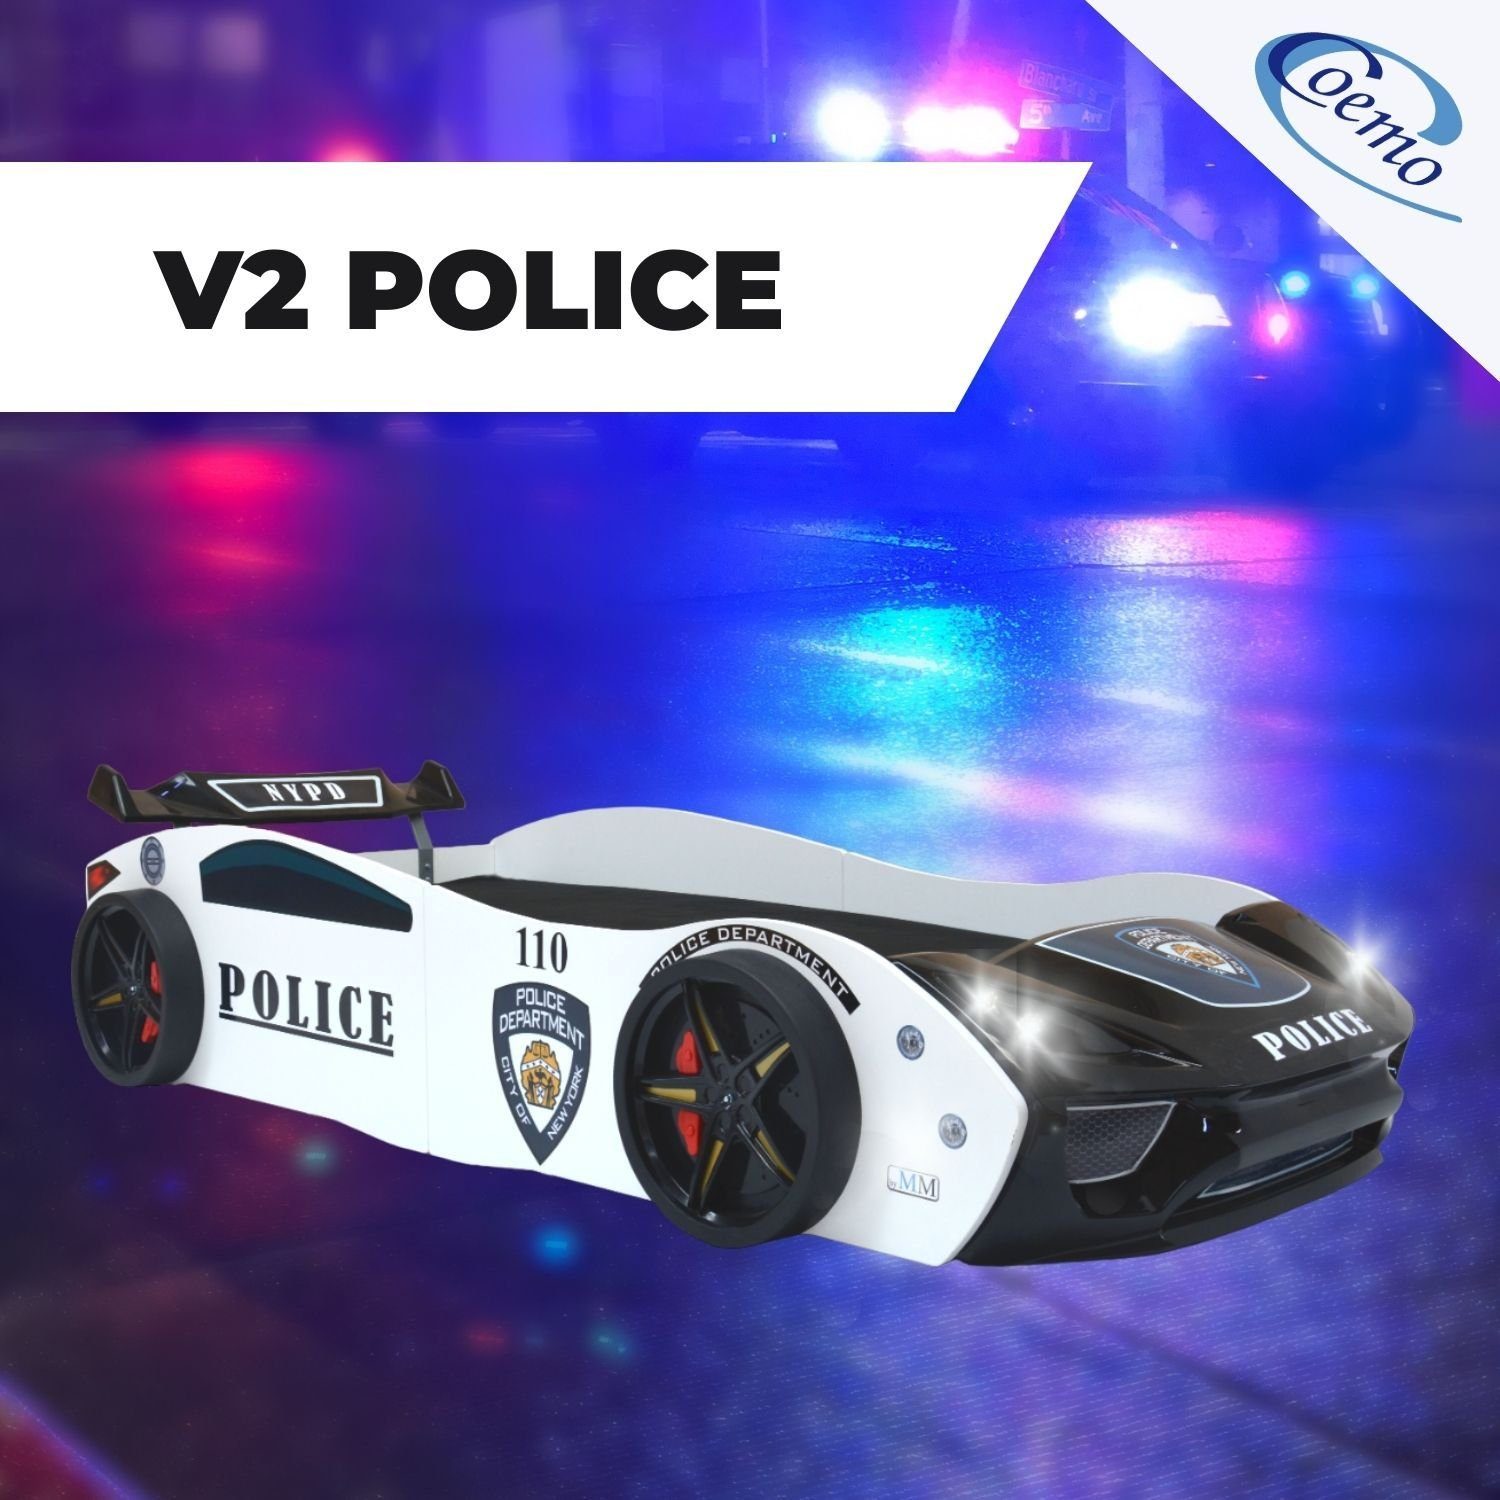 POLICE (Komplett-Set Coemo Autobett Autobett Polizeiauto-Design V2 Lattenrost mit und Lattenrost), Bett